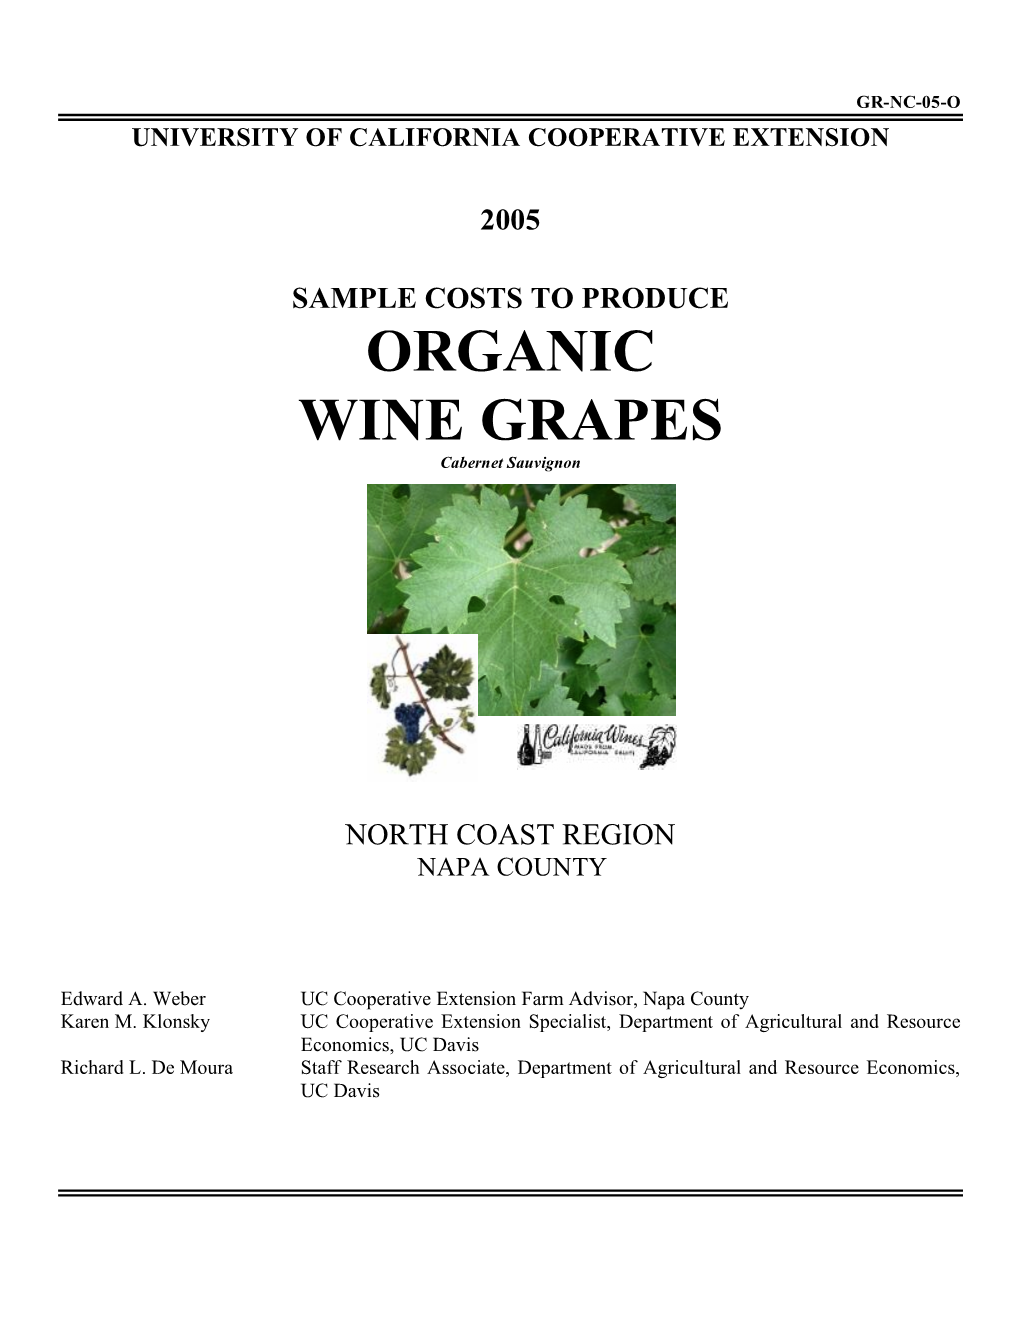 ORGANIC WINE GRAPES Cabernet Sauvignon NORTH COAST REGION – Napa County